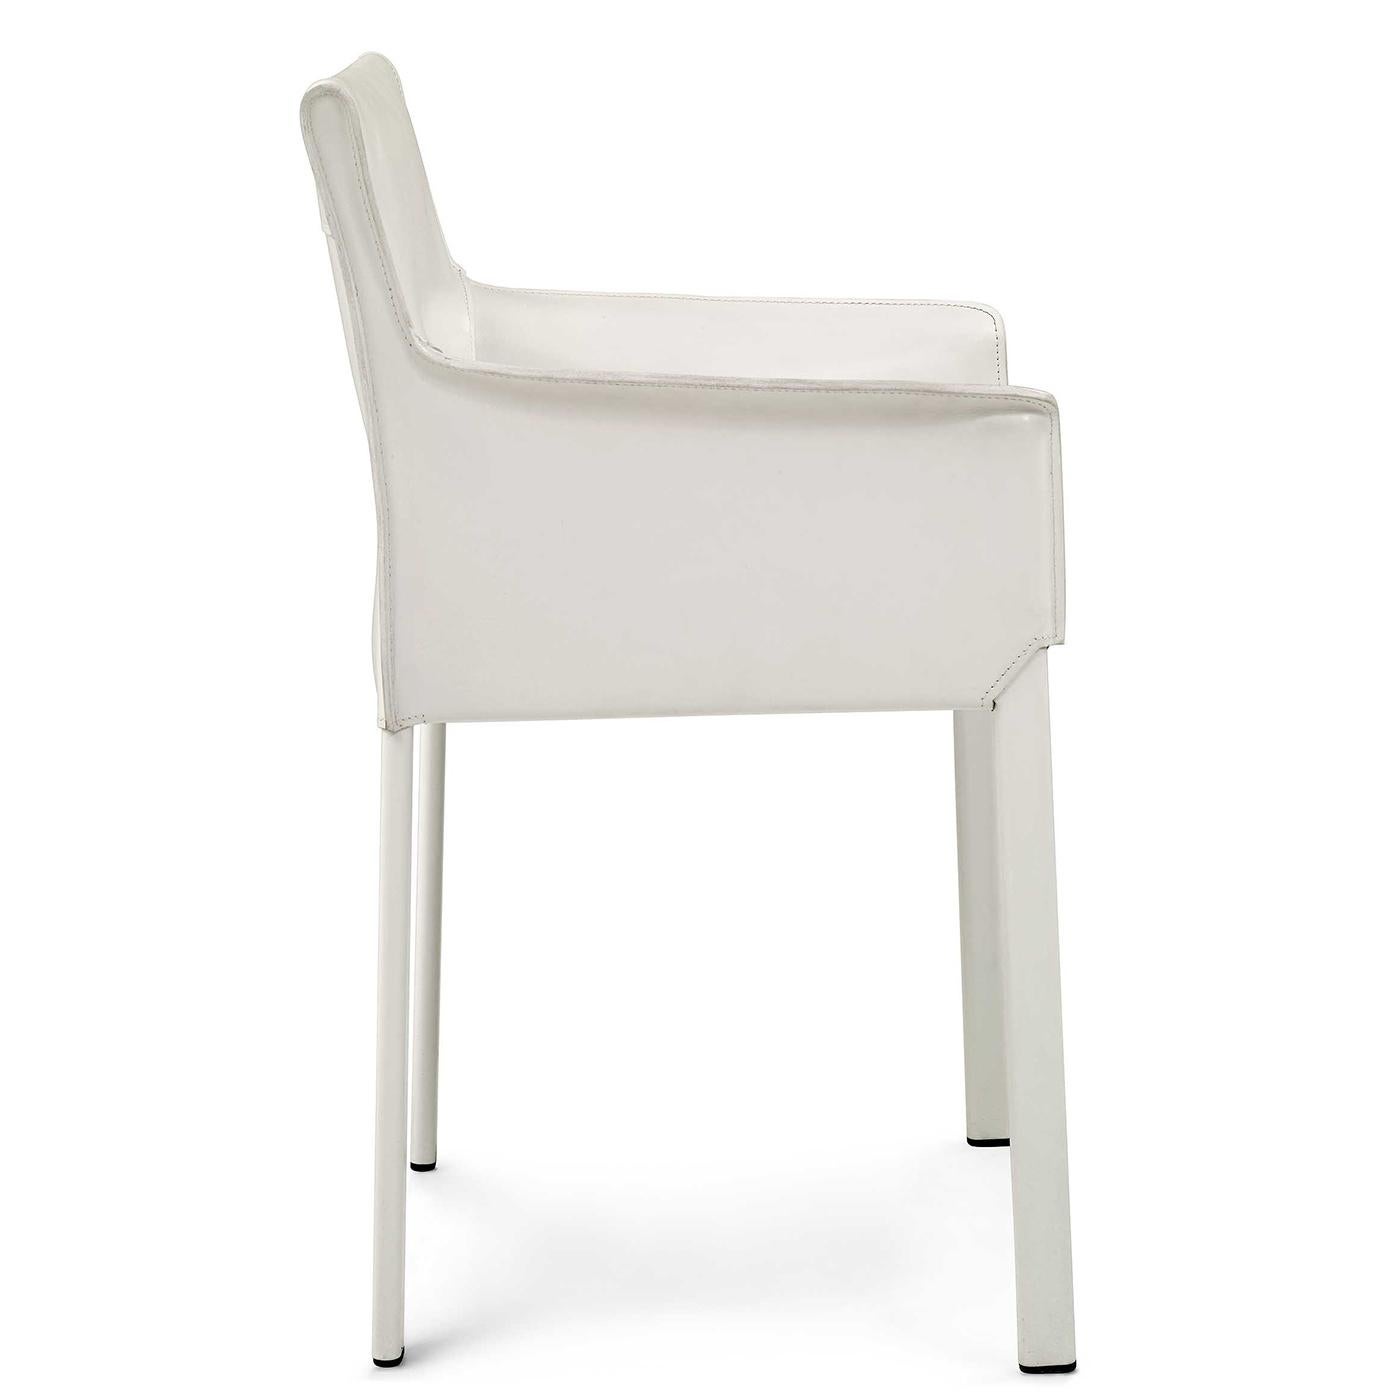 Ce fauteuil minimaliste à structure en acier est doté d'une assise et d'un dossier recouverts de cuir blanc, ainsi que d'une lèchefrite d'assise en métal enveloppée de tissu technique noir. Ses quatre pieds métalliques, plats et fins, sont peints en